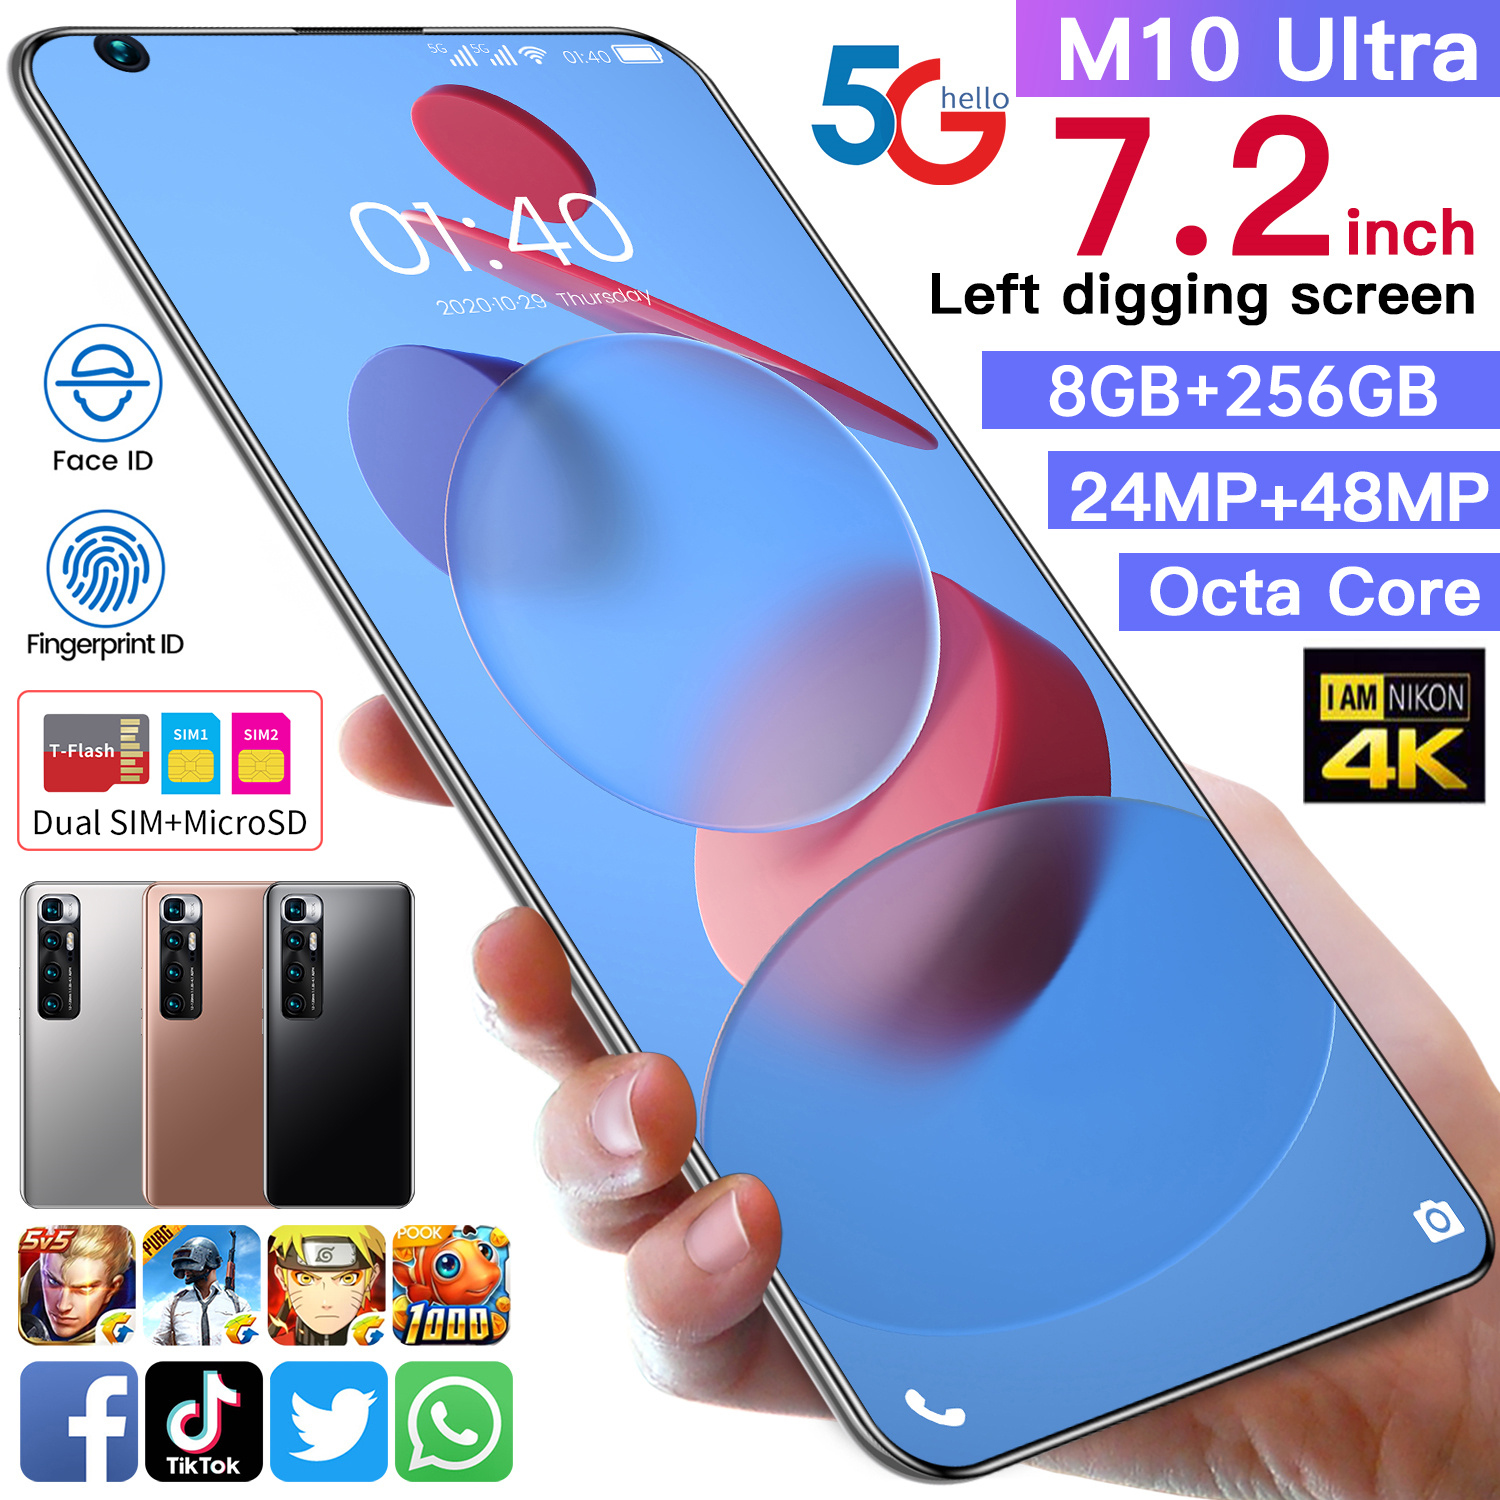 จัดส่งฟรี มือถือโทรศัพท์มือถือ Xiao M10 Ultra5G 7.2 นิ้วFull HD Ram12GB+Rom512Gกล้องห โทรศัพท์ Smartphoneโทรศัพท์ถูกๆโทรศัพท์ Android HD 6+128GB รองรับเครือข่าย 5Gการ์ด